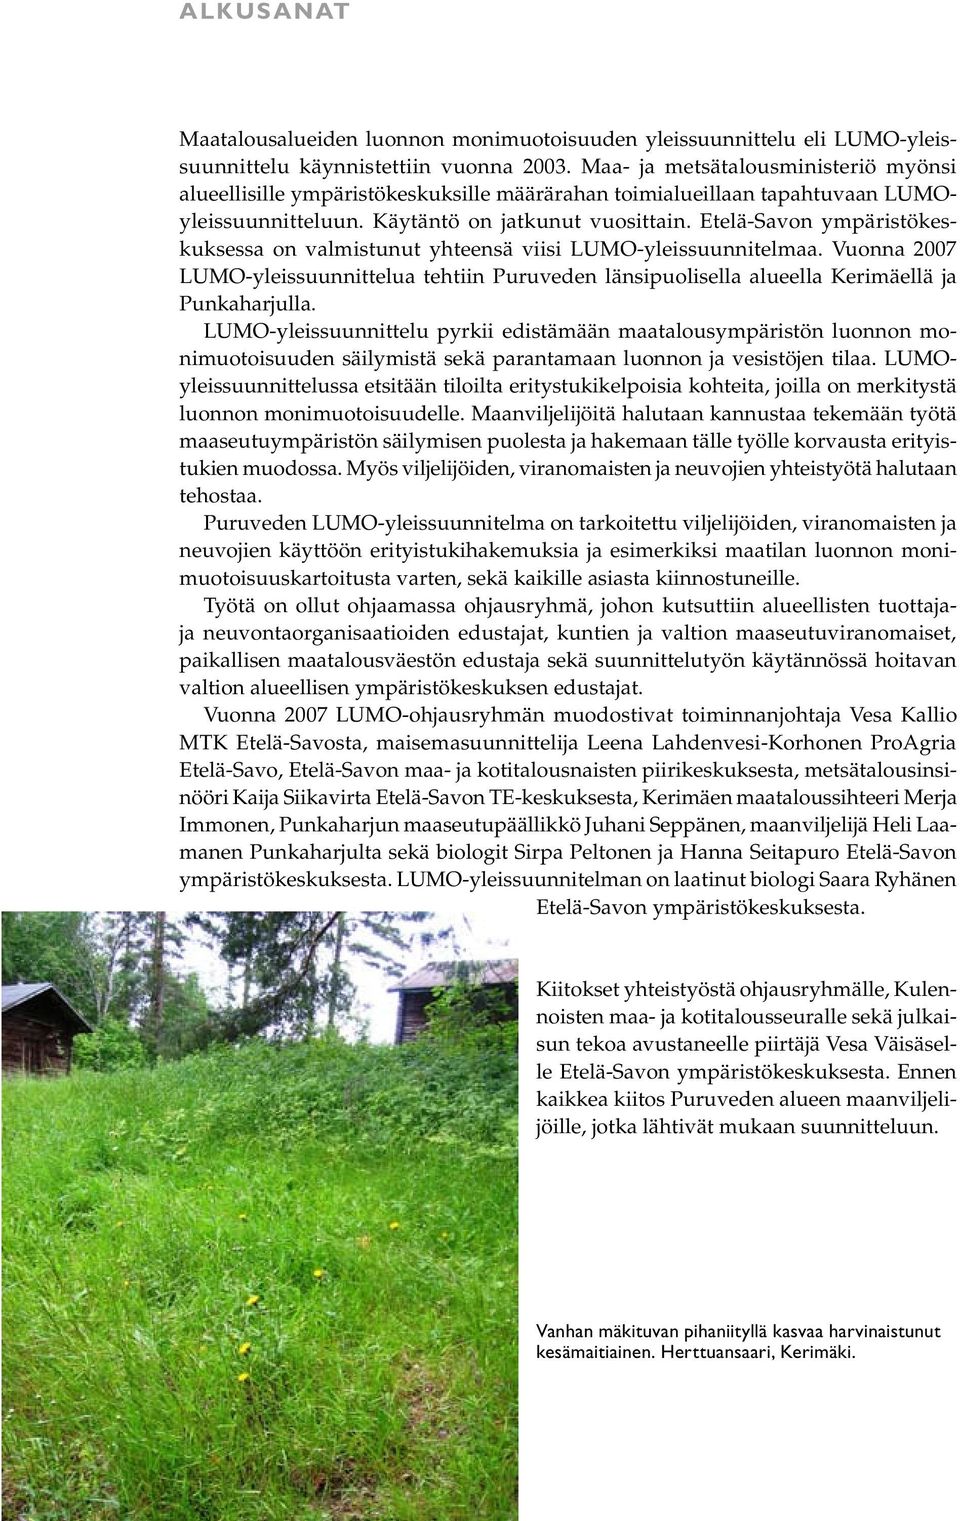 Etelä-Savon ympäristökeskuksessa on valmistunut yhteensä viisi LUMO-yleissuunnitelmaa. Vuonna 2007 LUMO-yleissuunnittelua tehtiin Puruveden länsipuolisella alueella Kerimäellä ja Punkaharjulla.